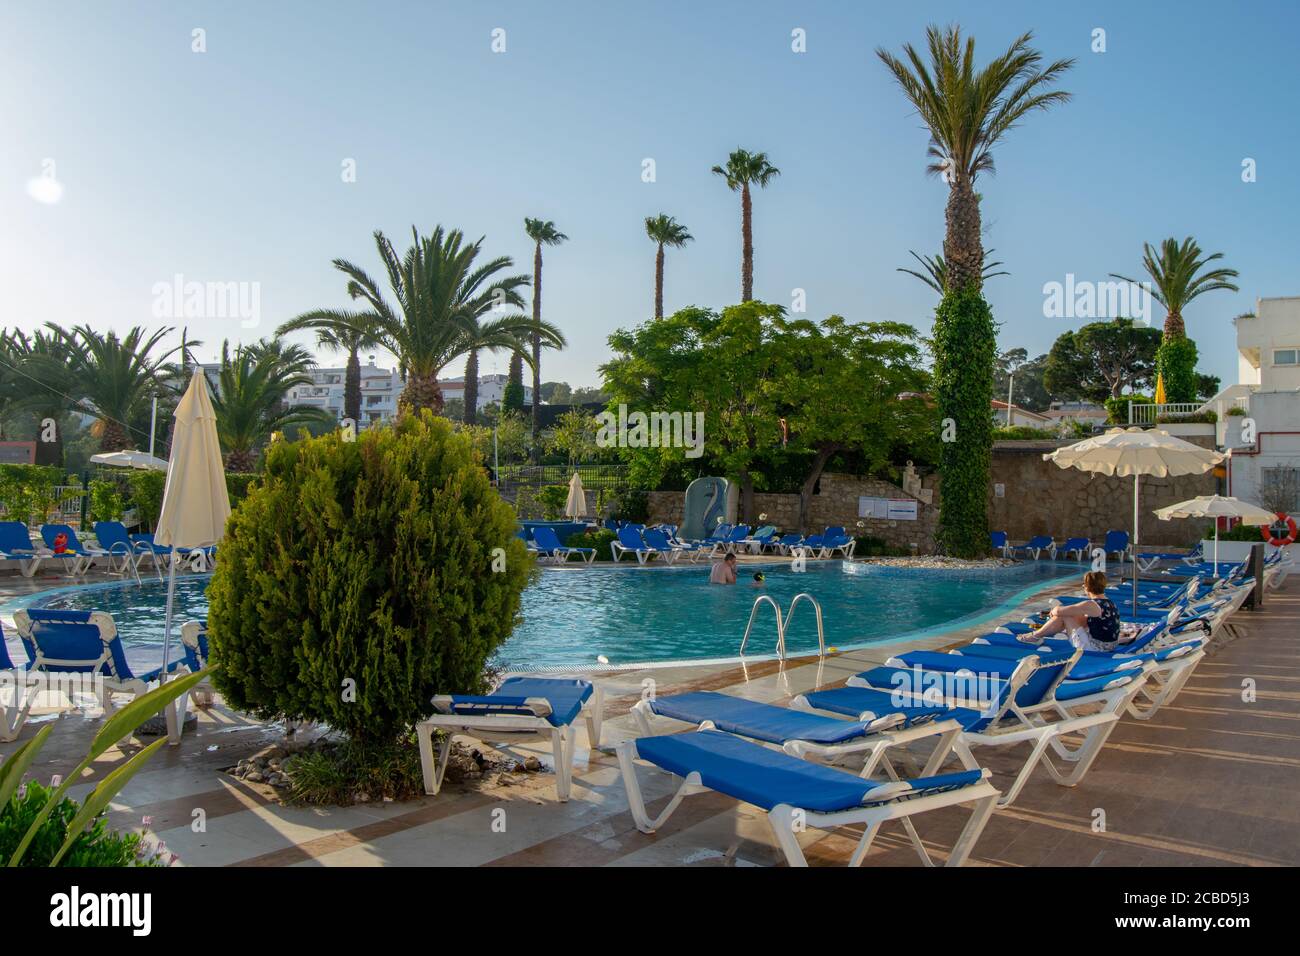 L'hotel con piscina vuota in covid19 impedisce l'adozione di misure Foto Stock